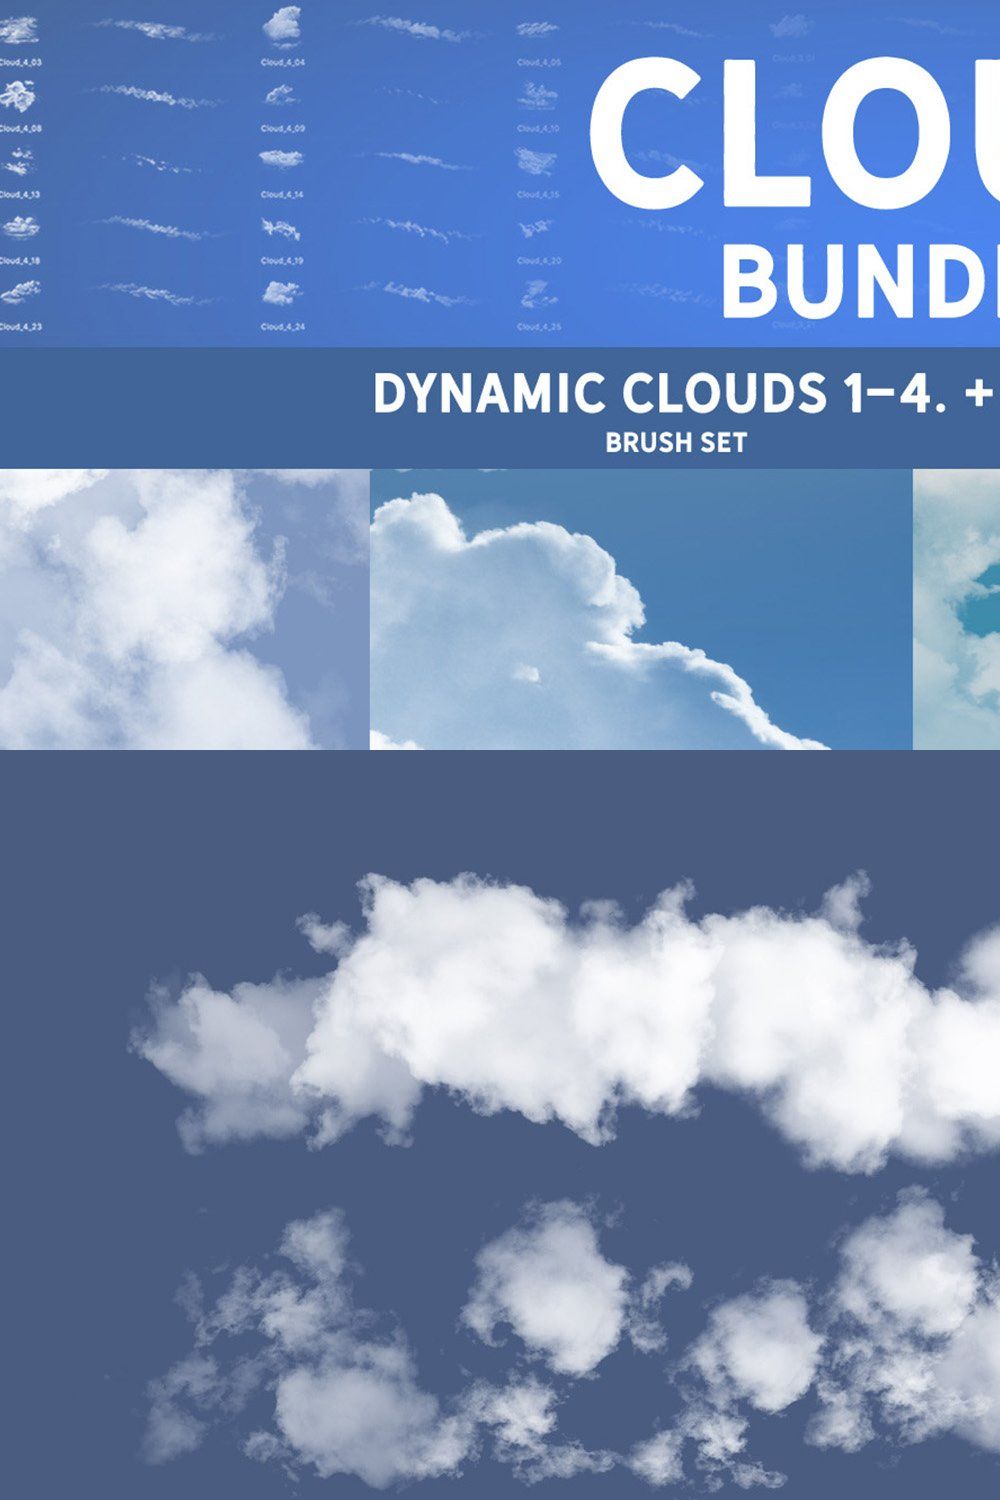 Cloud Bundle pinterest preview image.